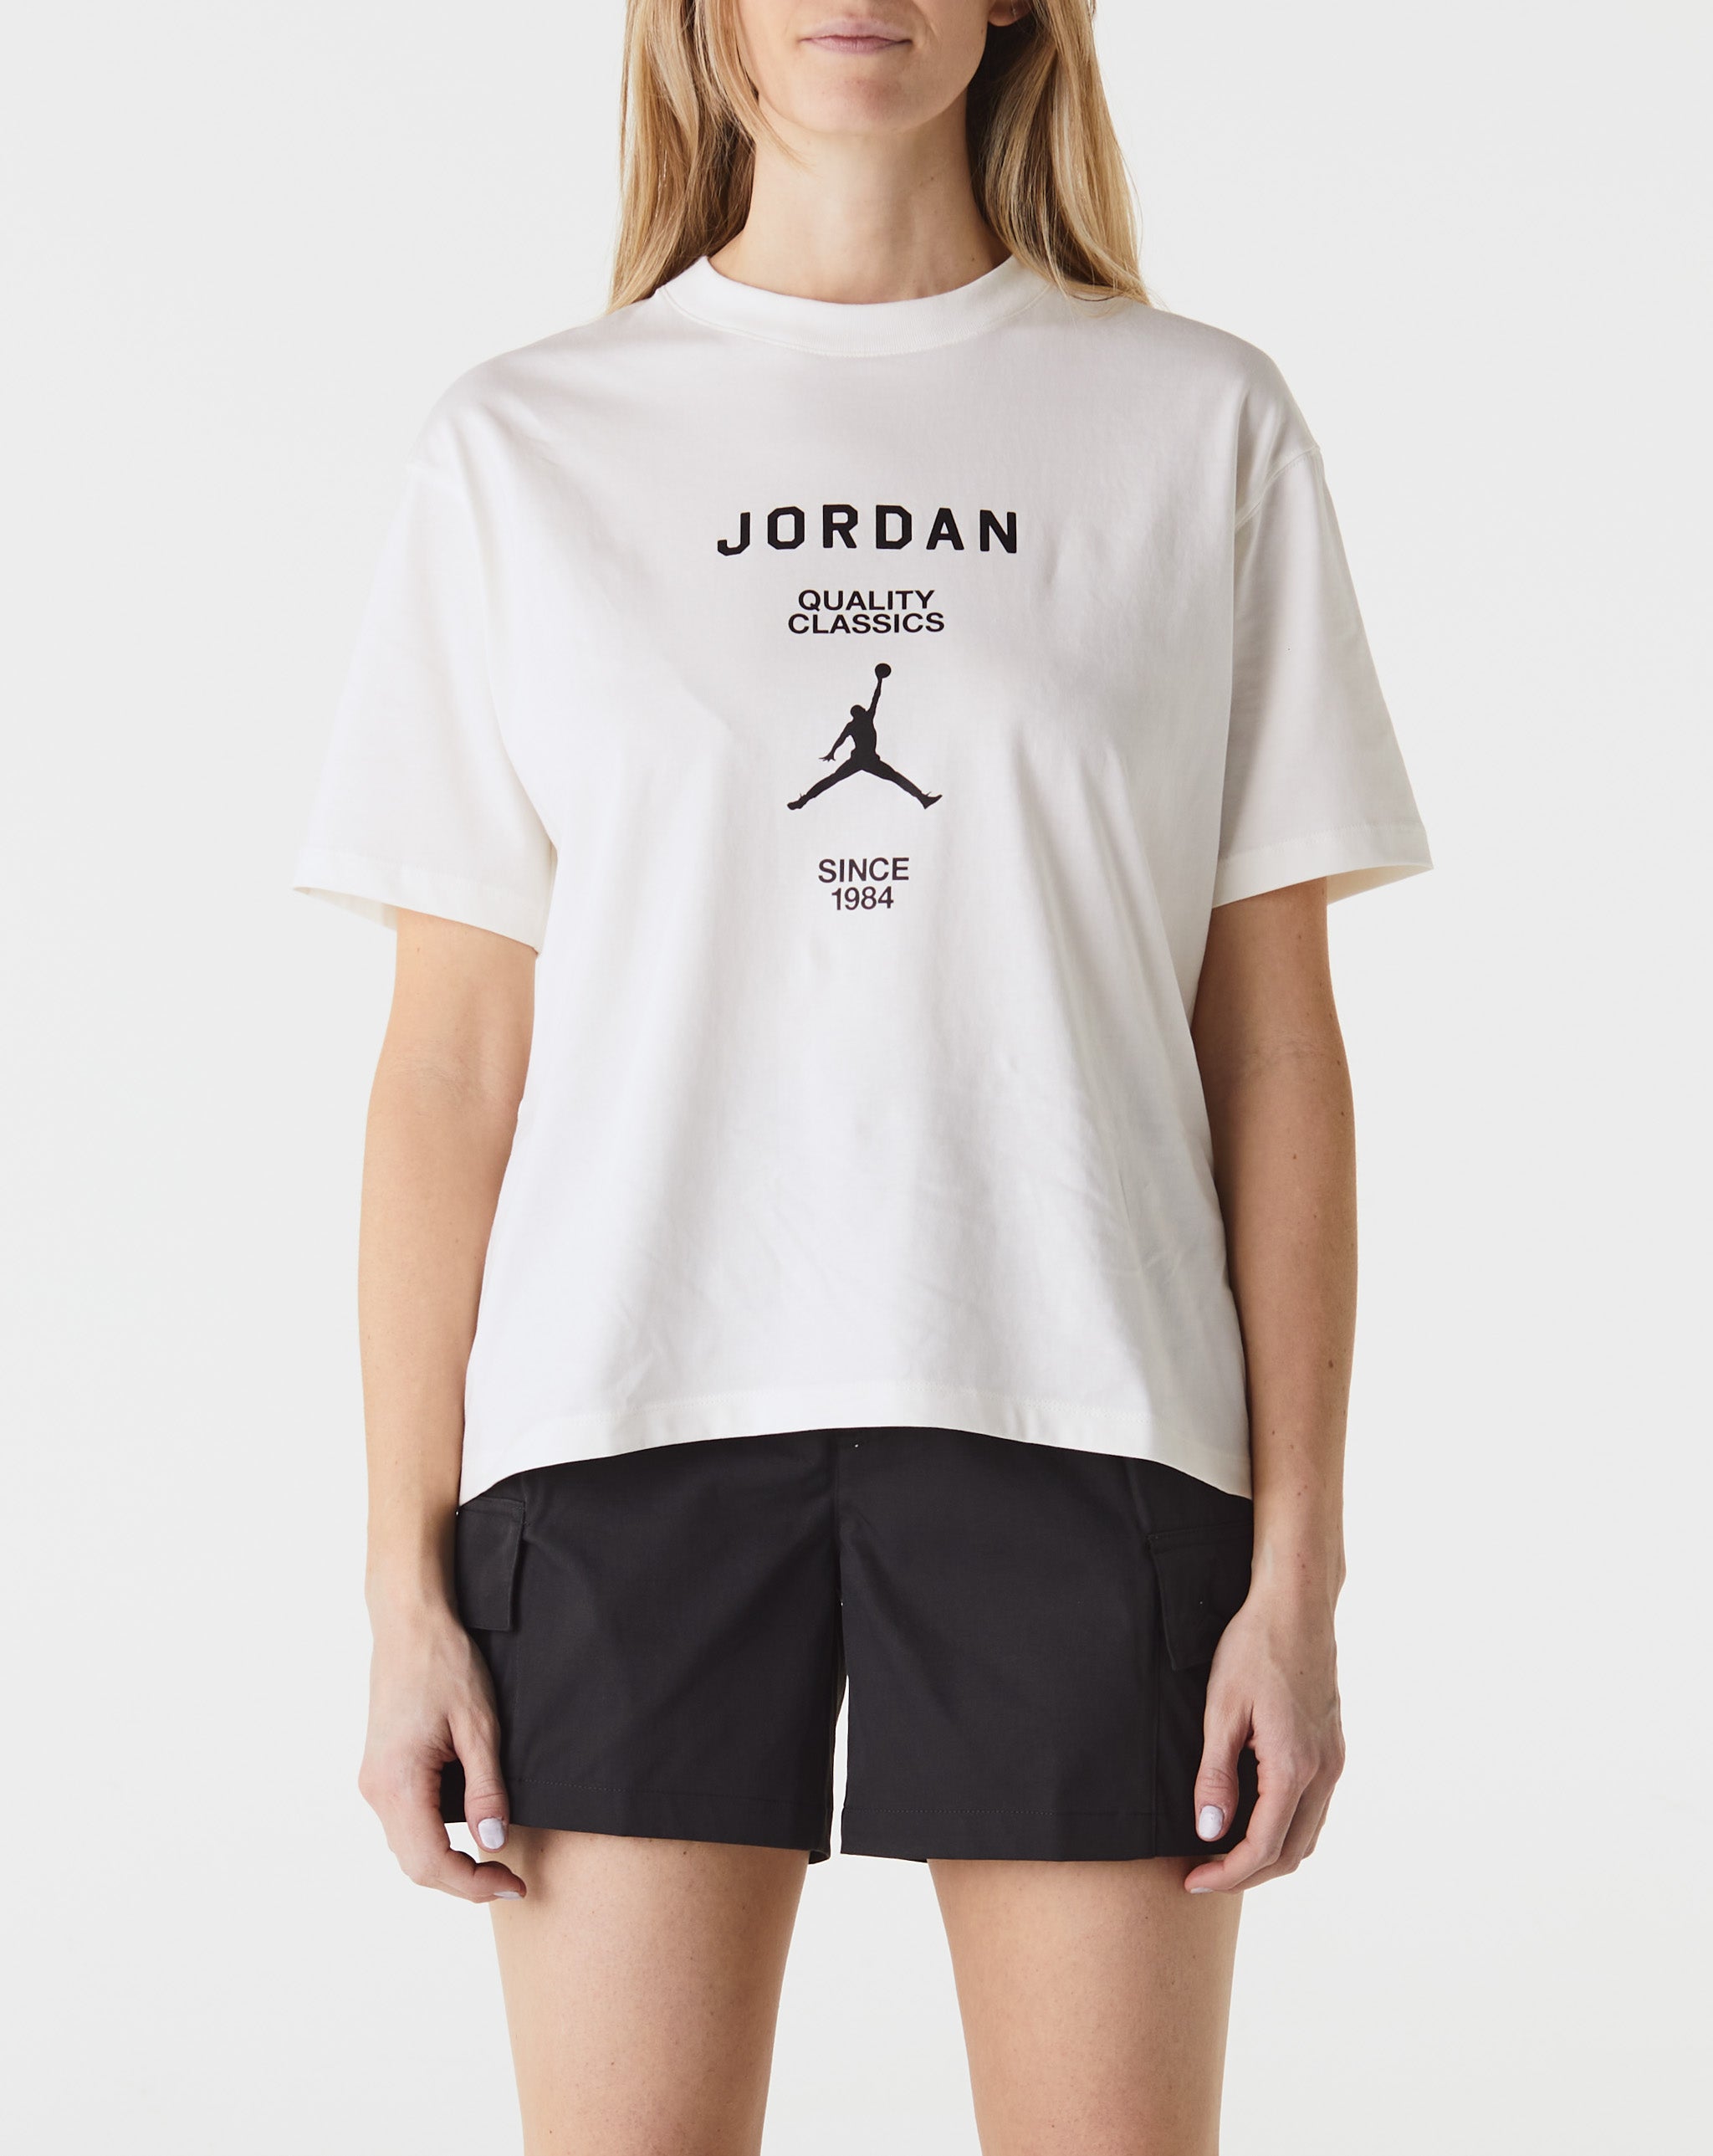 Air Jordan University Women's Jordan University Quality Classics T-Shirt  - Cheap Erlebniswelt-fliegenfischen Jordan outlet